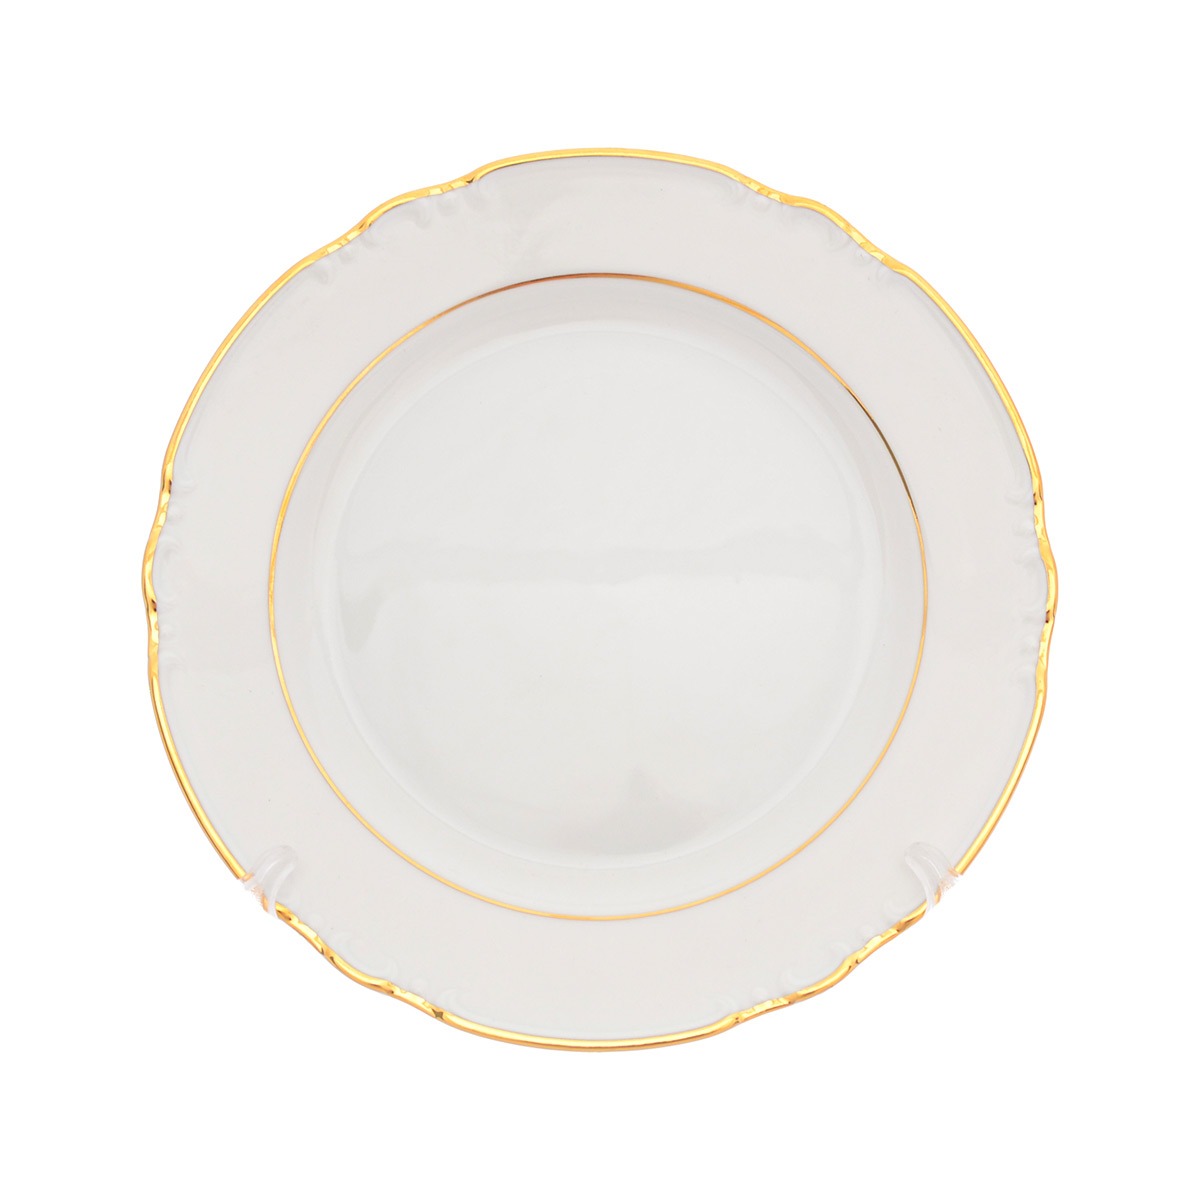 Набор тарелок Thun Констанция отводка золото 24 см 6 шт набор десертных тарелок thun мария луиза синий 19 см 6 шт